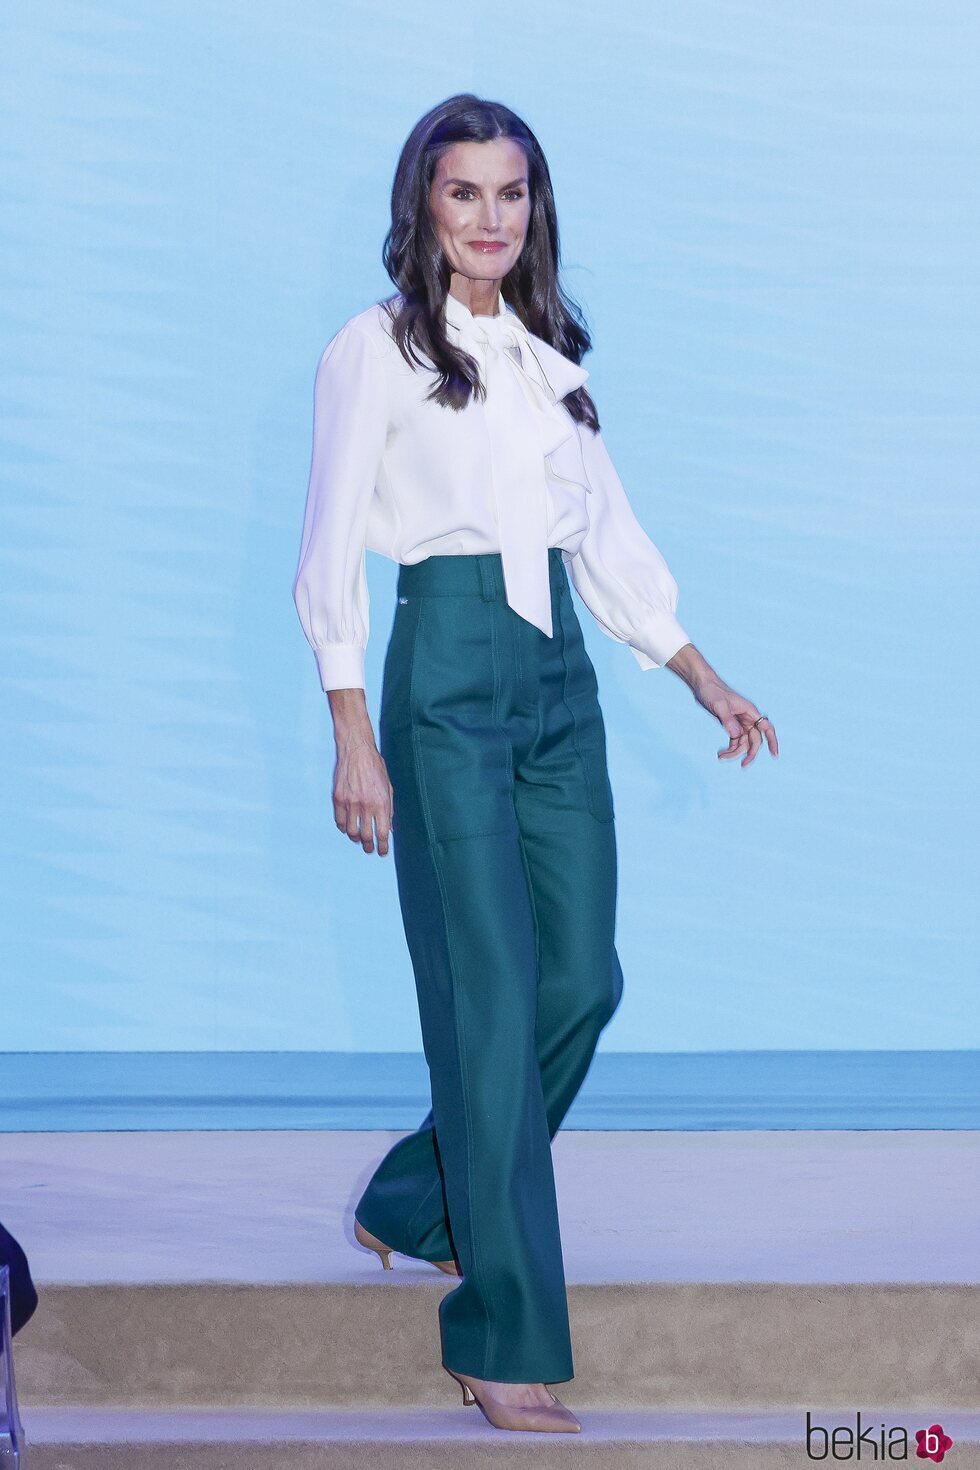 La Reina Letizia con una blusa blanca de Carolina Herrera y pantalones verdes de Hugo Boss